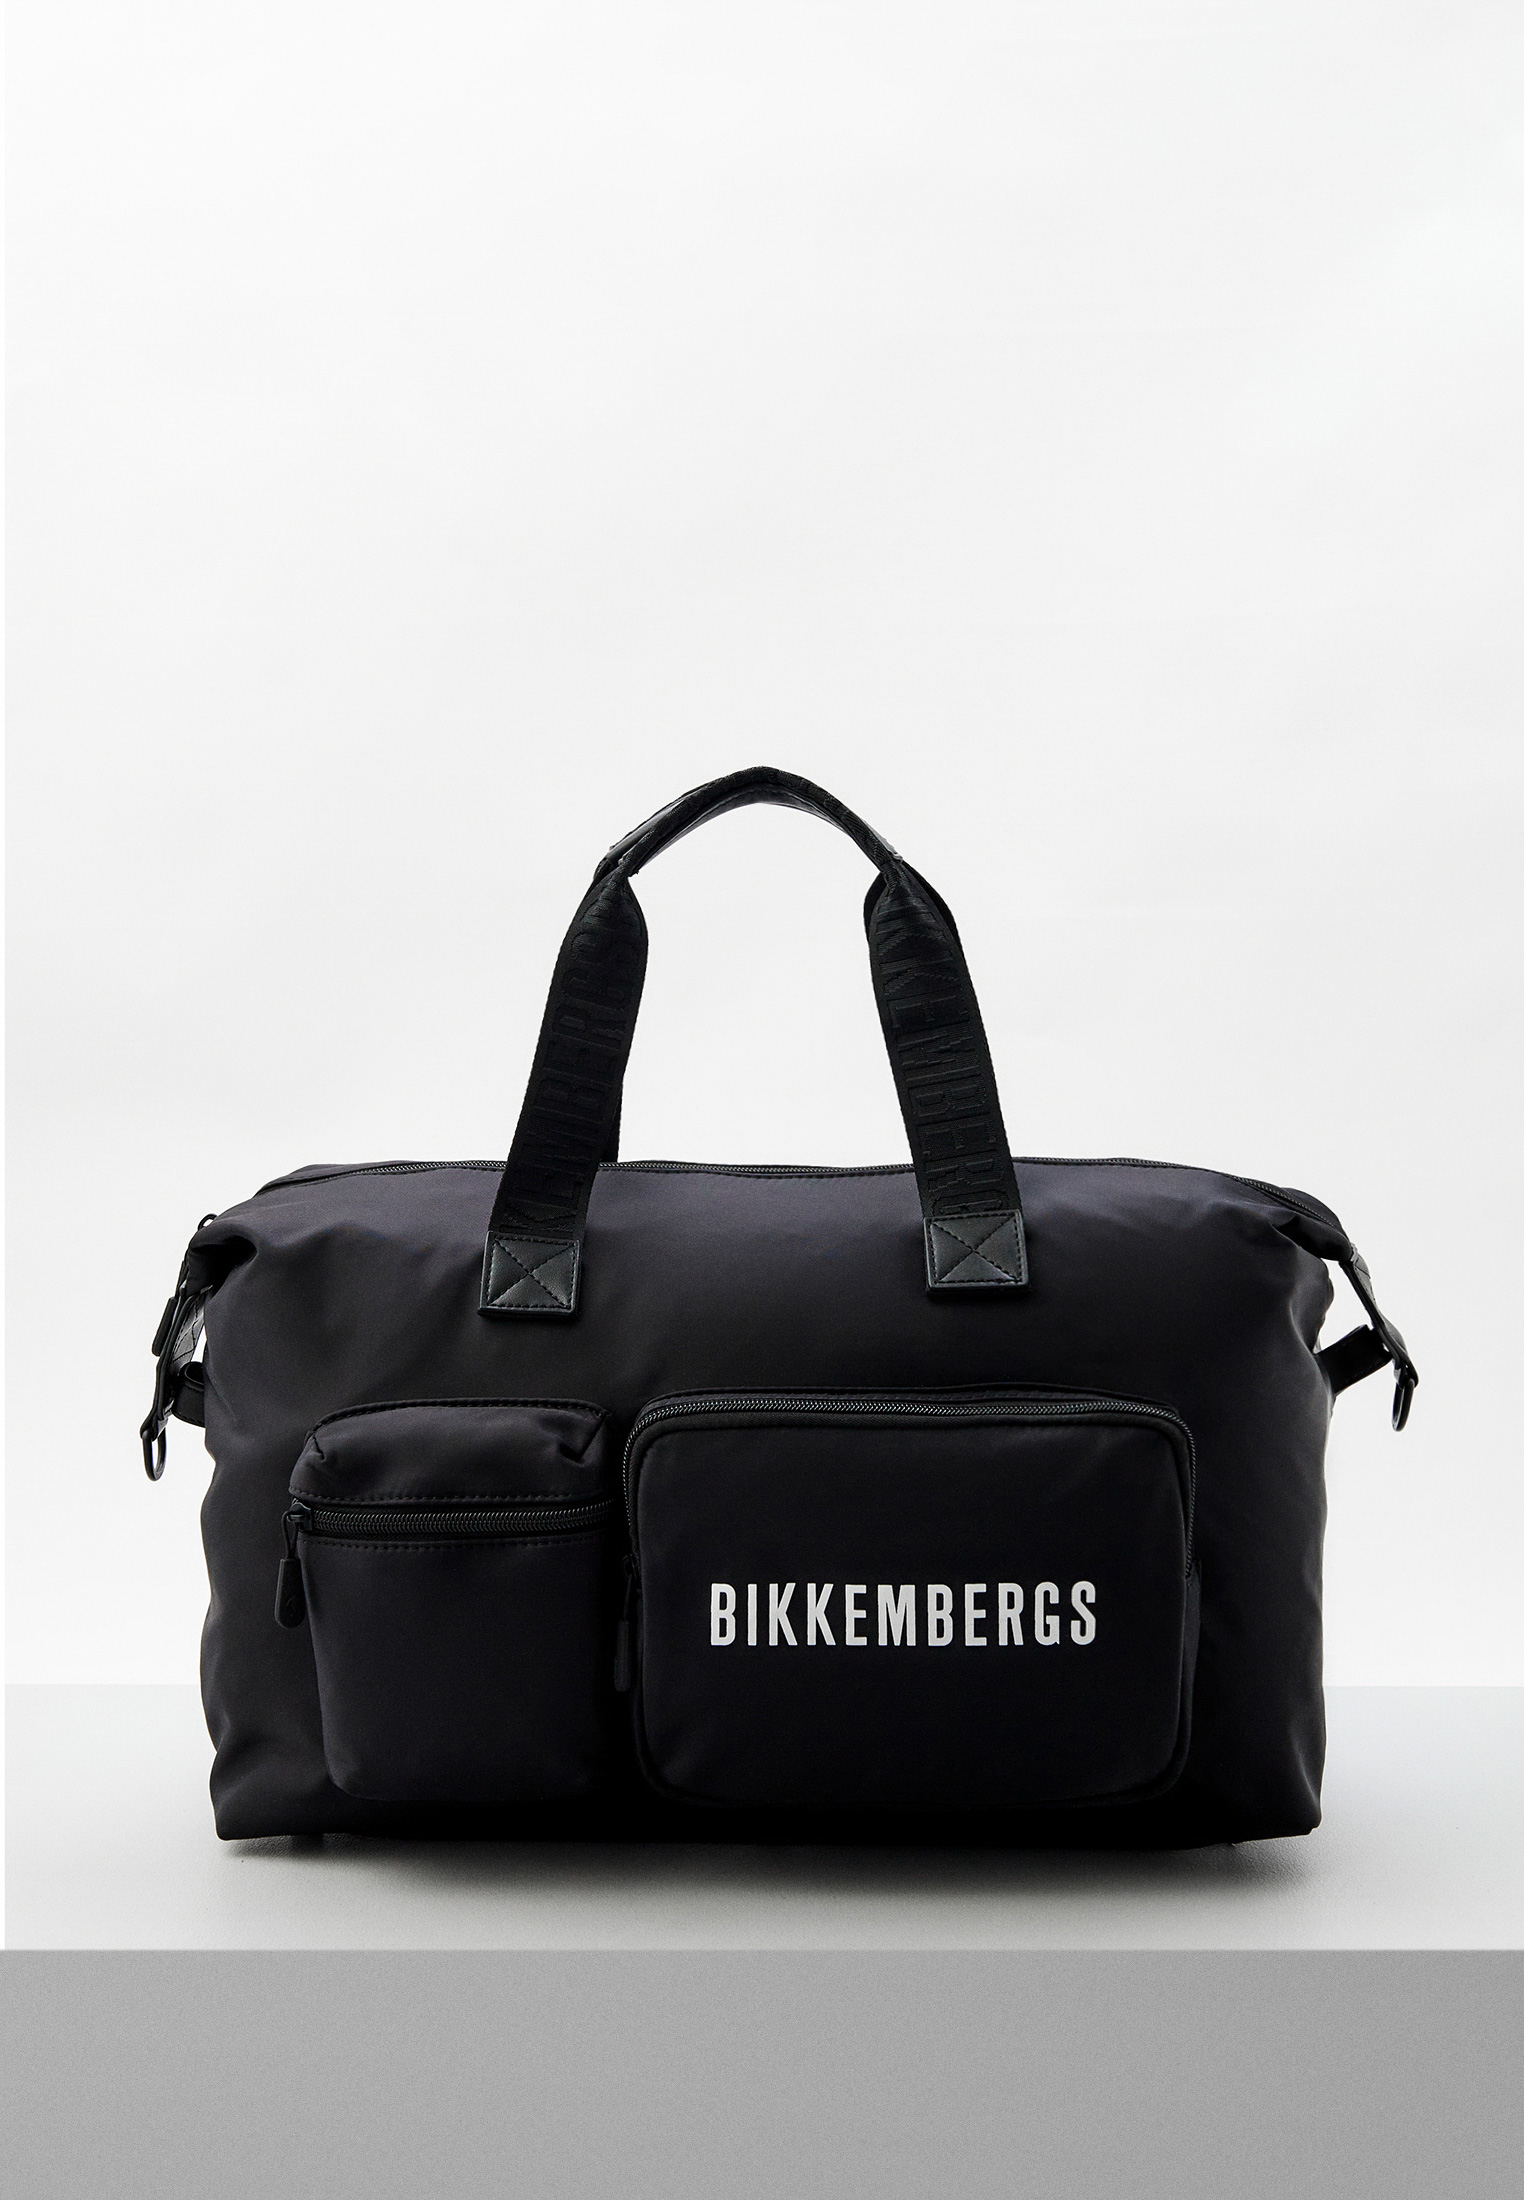 Купить мужскую сумку Bikkembergs. Чемодан Bikkembergs купить.